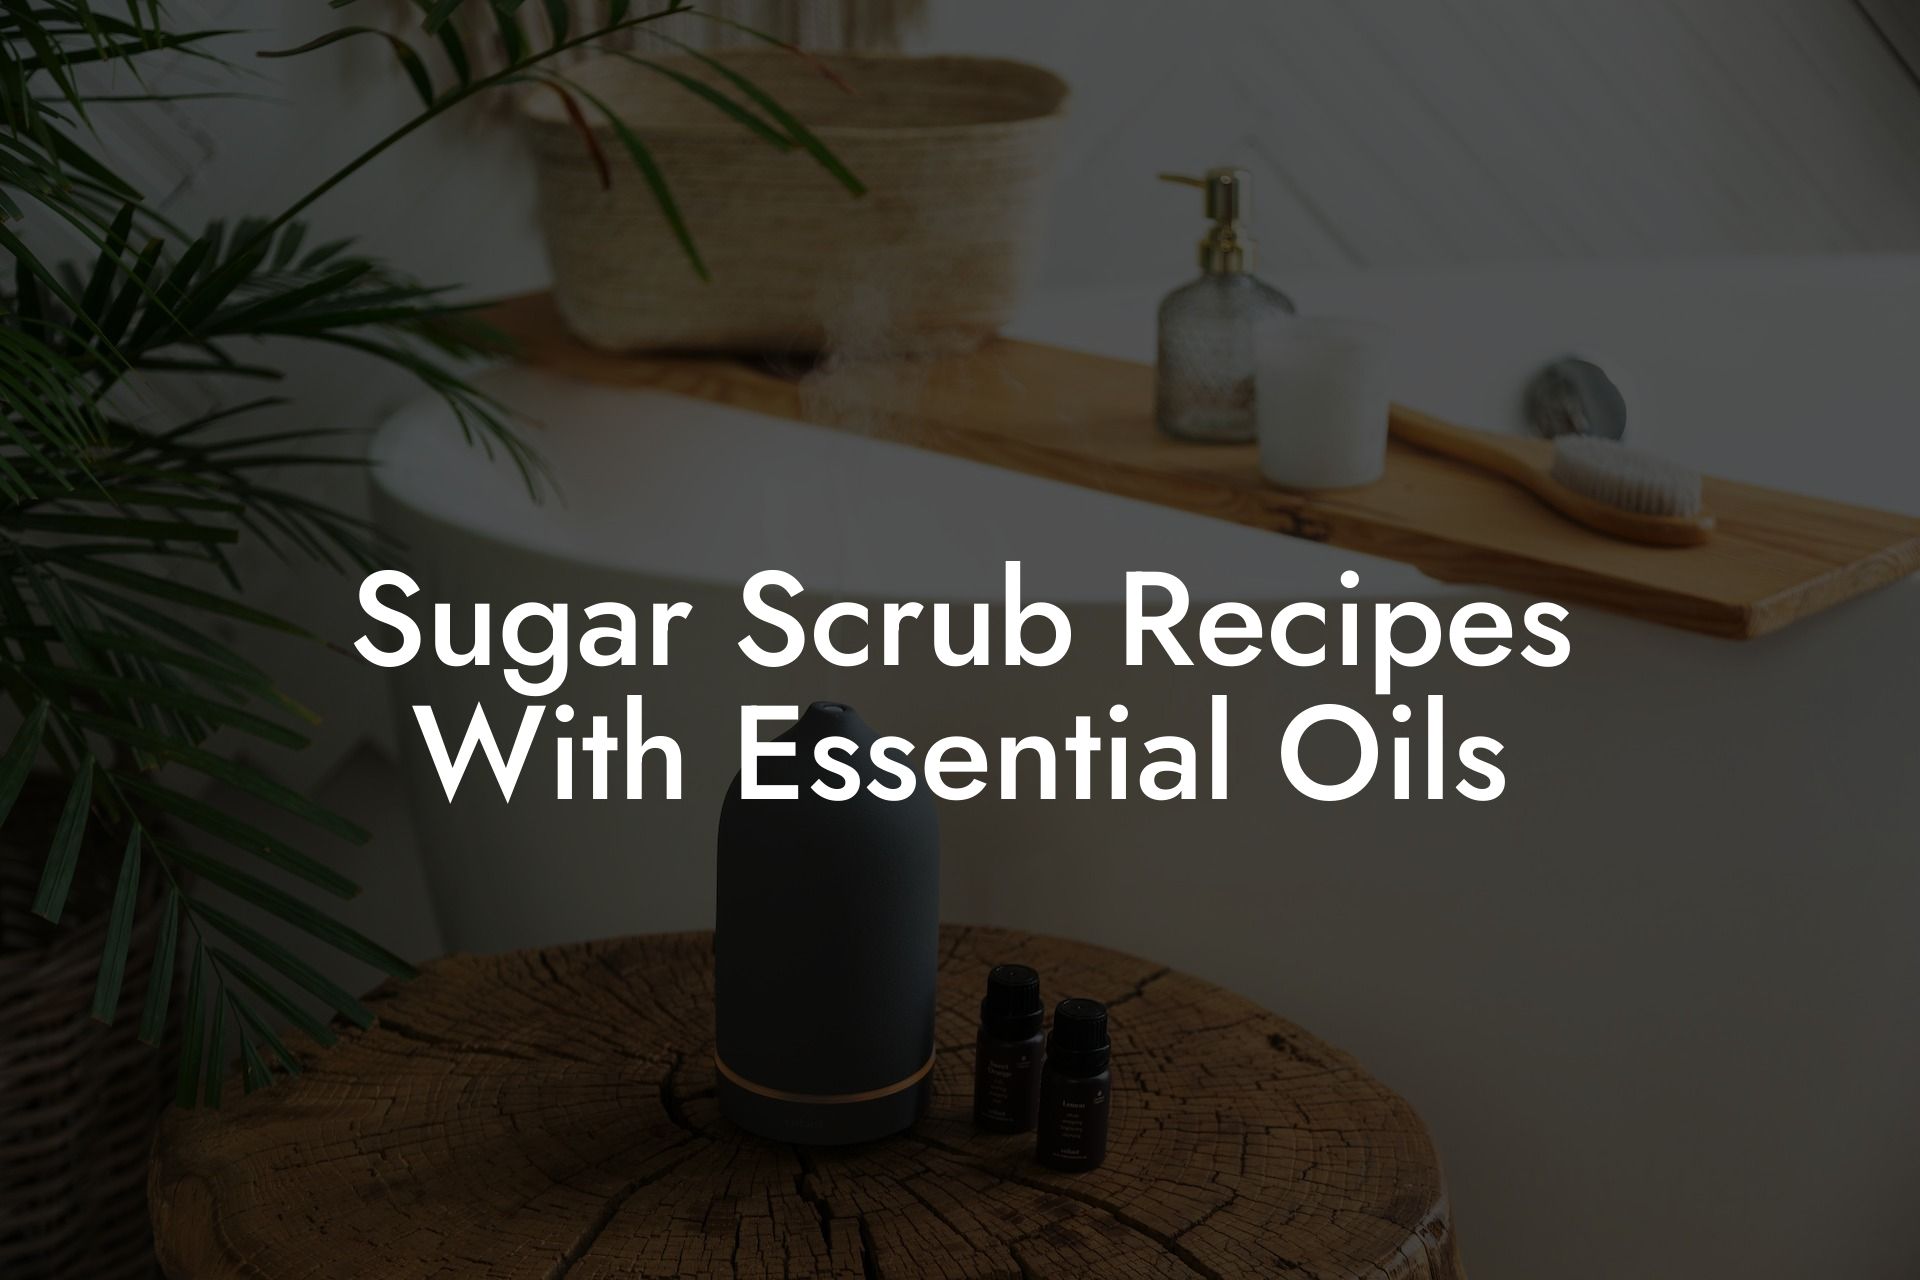 Sugar Scrub Recipes With Essential Oils